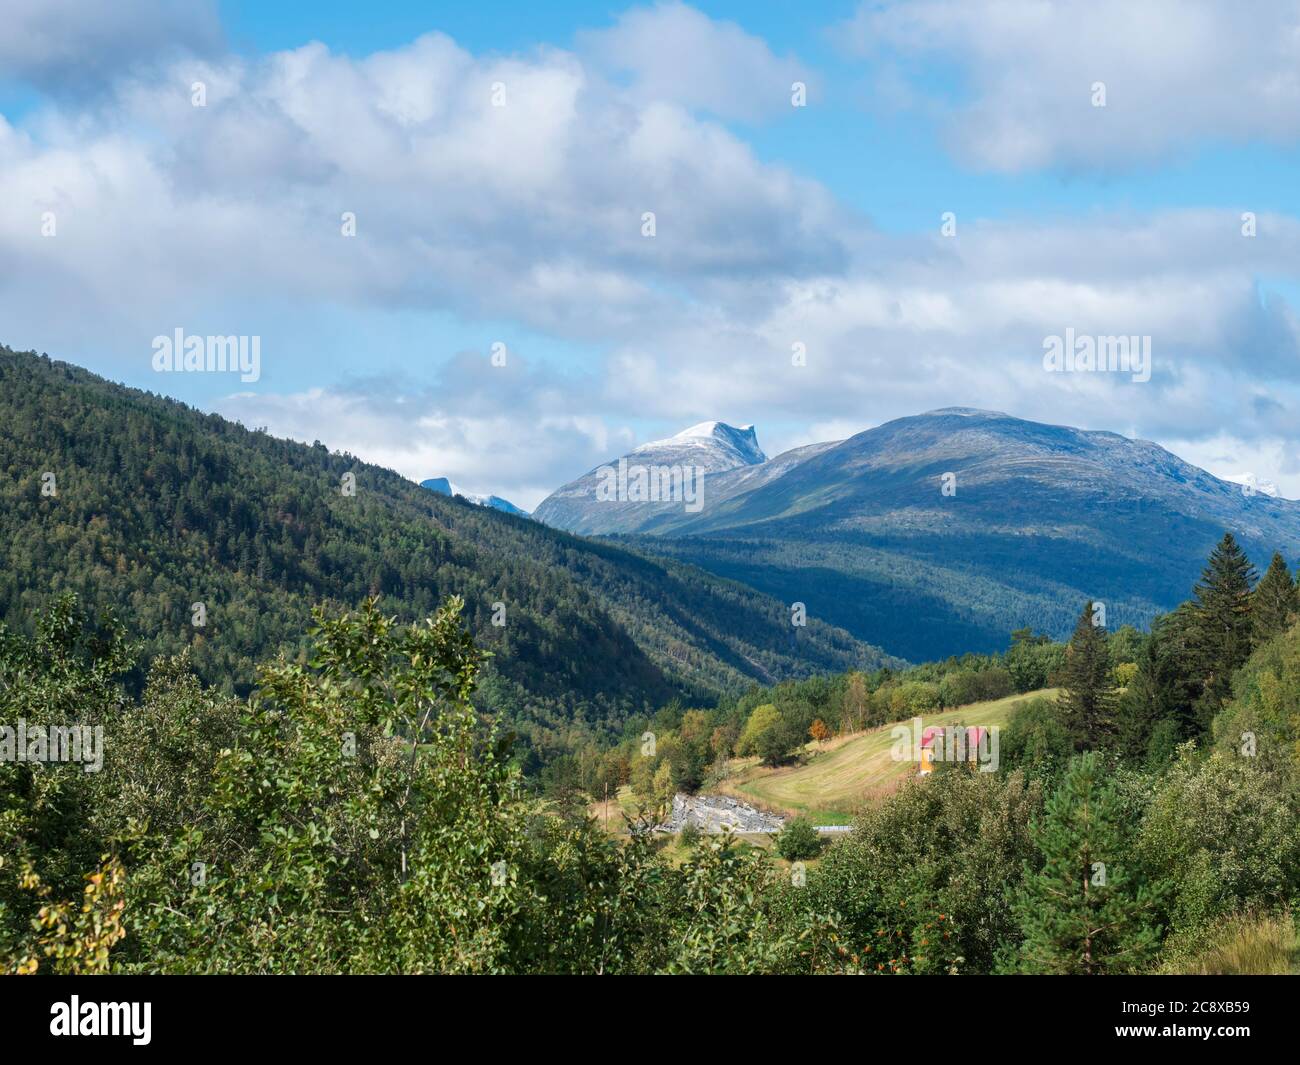 Vue sur la vallée de Romsdalen depuis la route E136 avec des sommets enneigés de montagnes, forêt verte et petite maison jaune rouge. Ciel bleu nuages blancs Banque D'Images